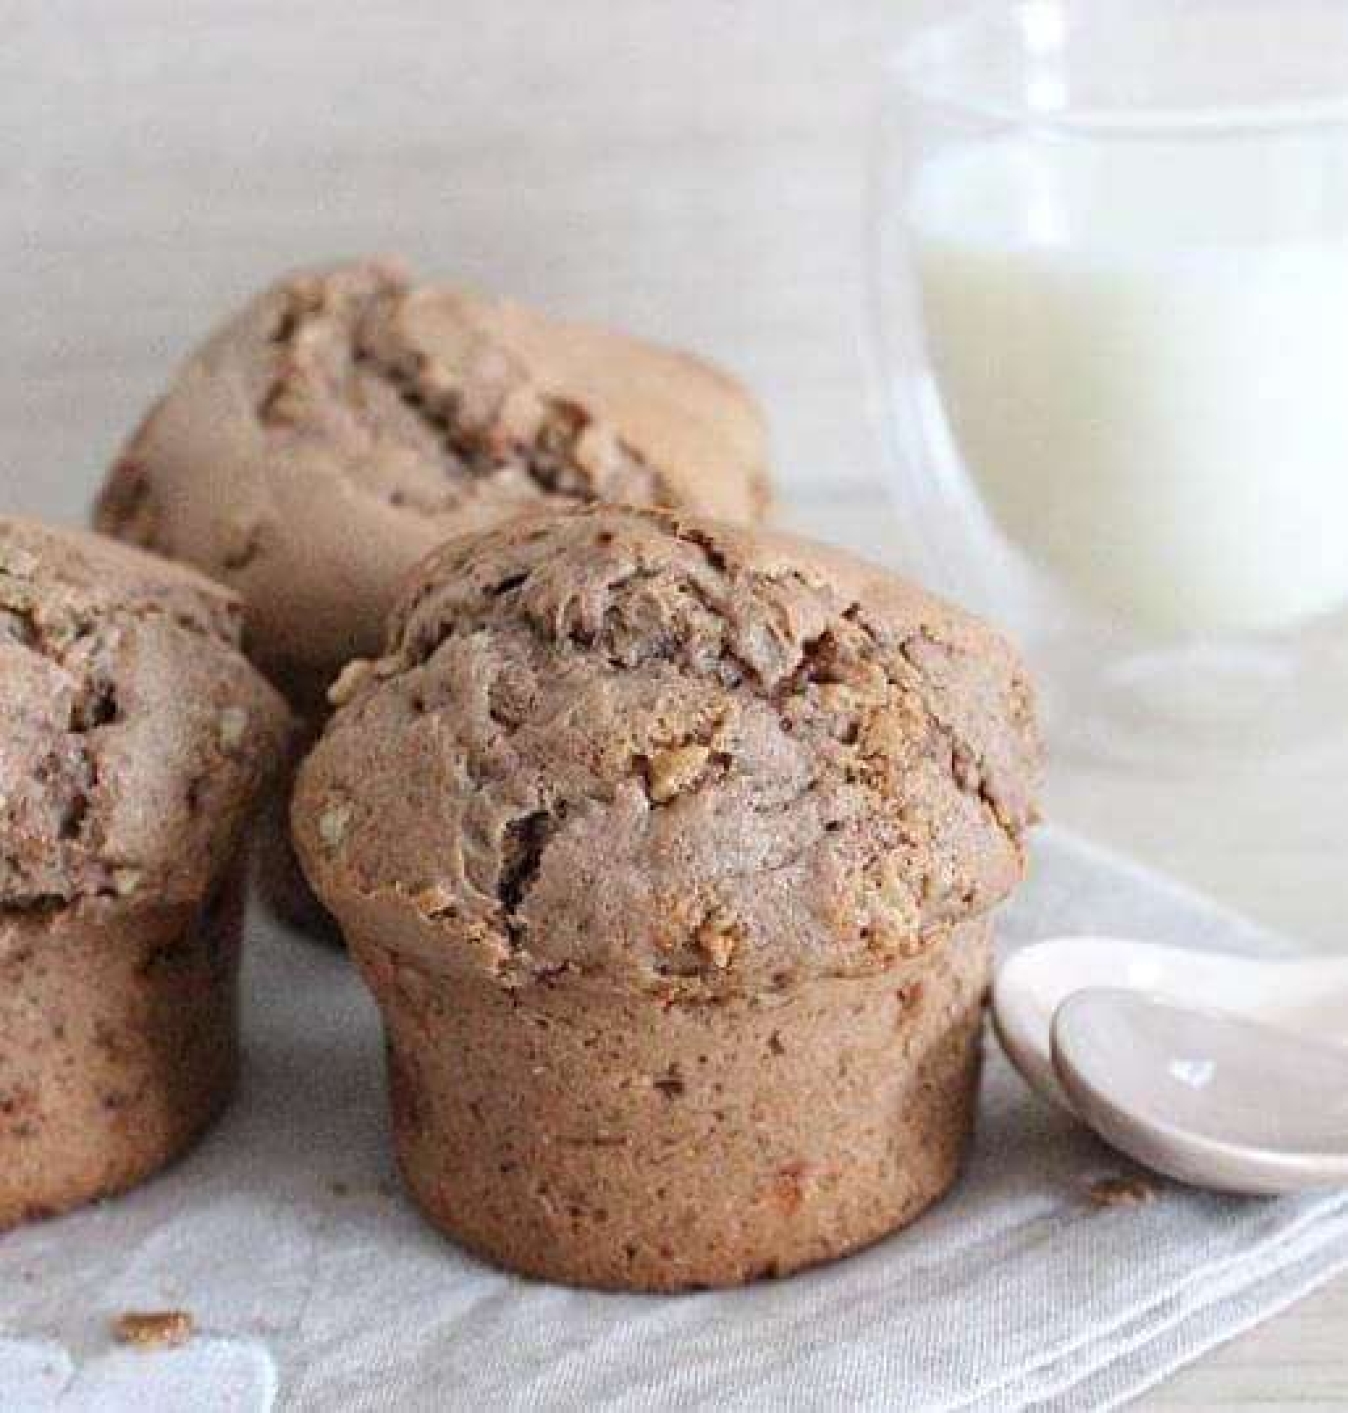 La recette de Julybentos : Enormes muffins choco noisettes